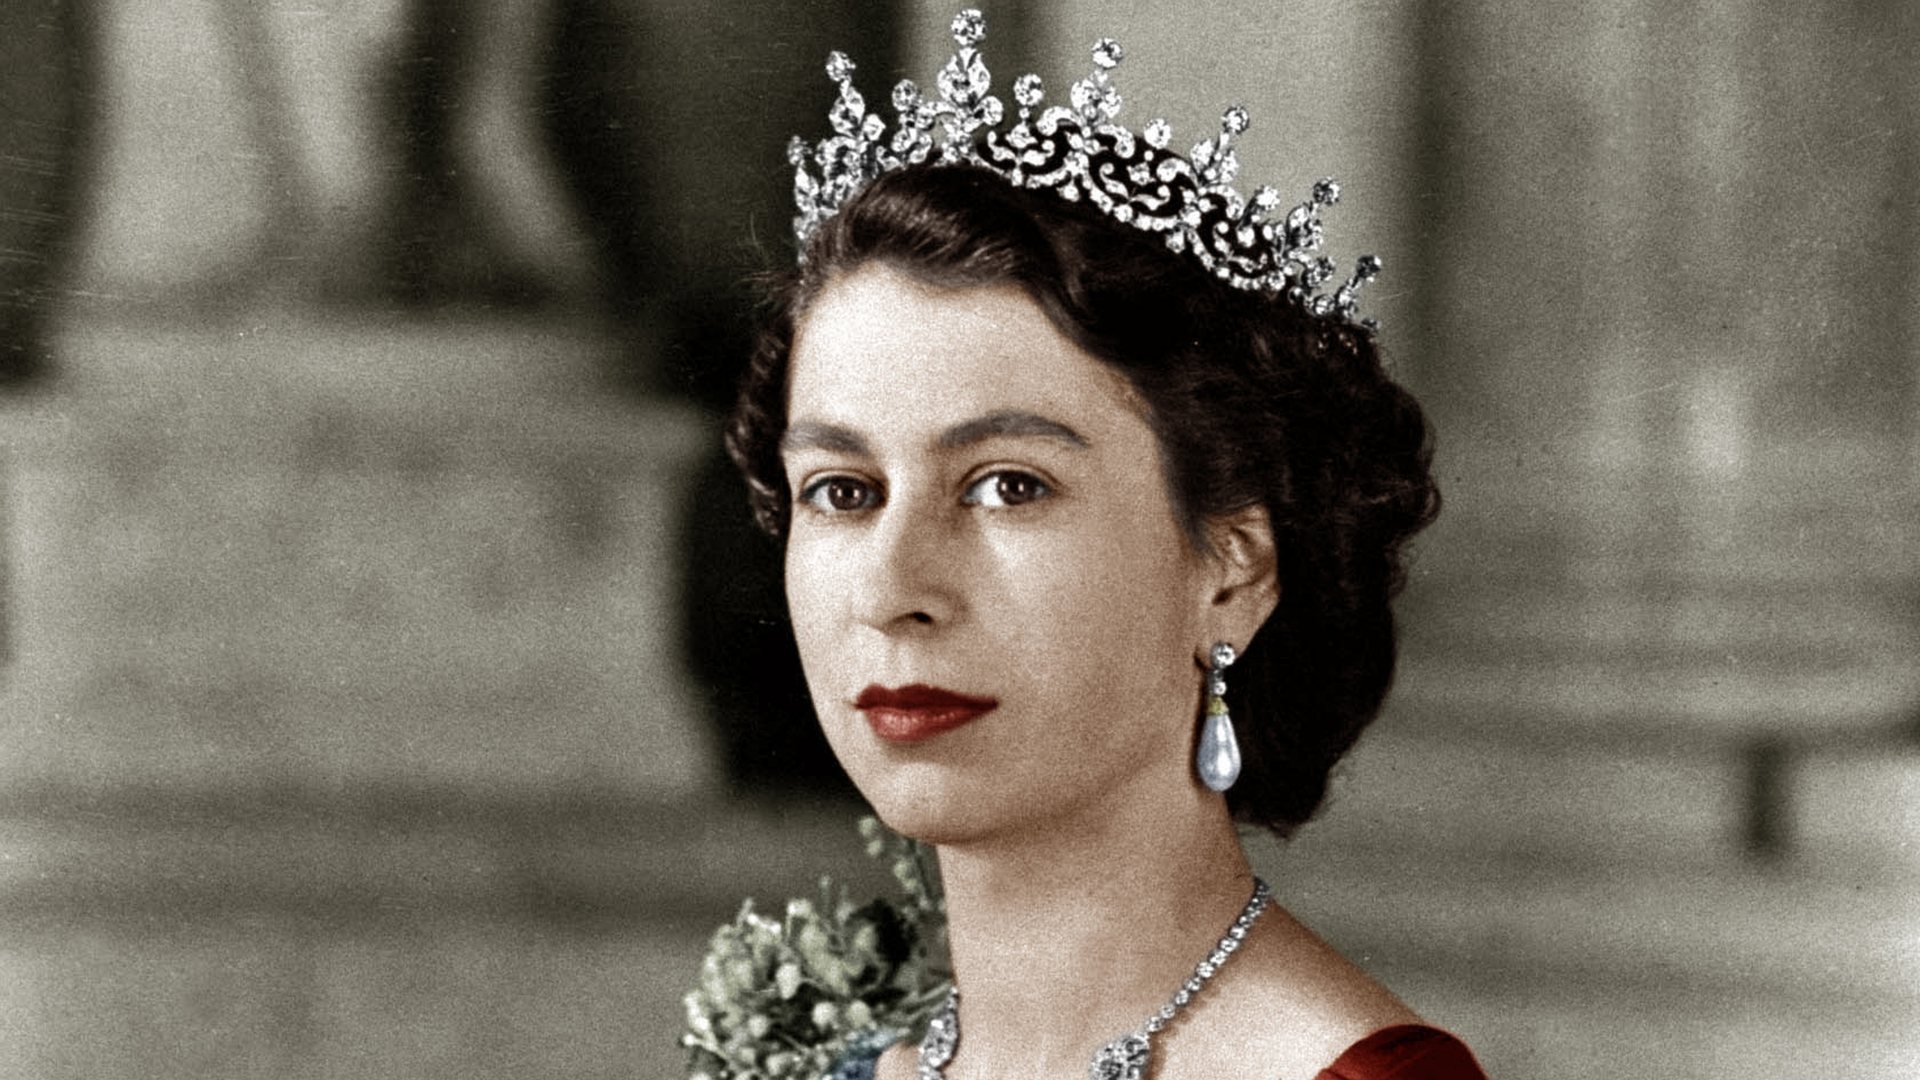 King George VI Dies; Elizabeth Becomes Queen of England